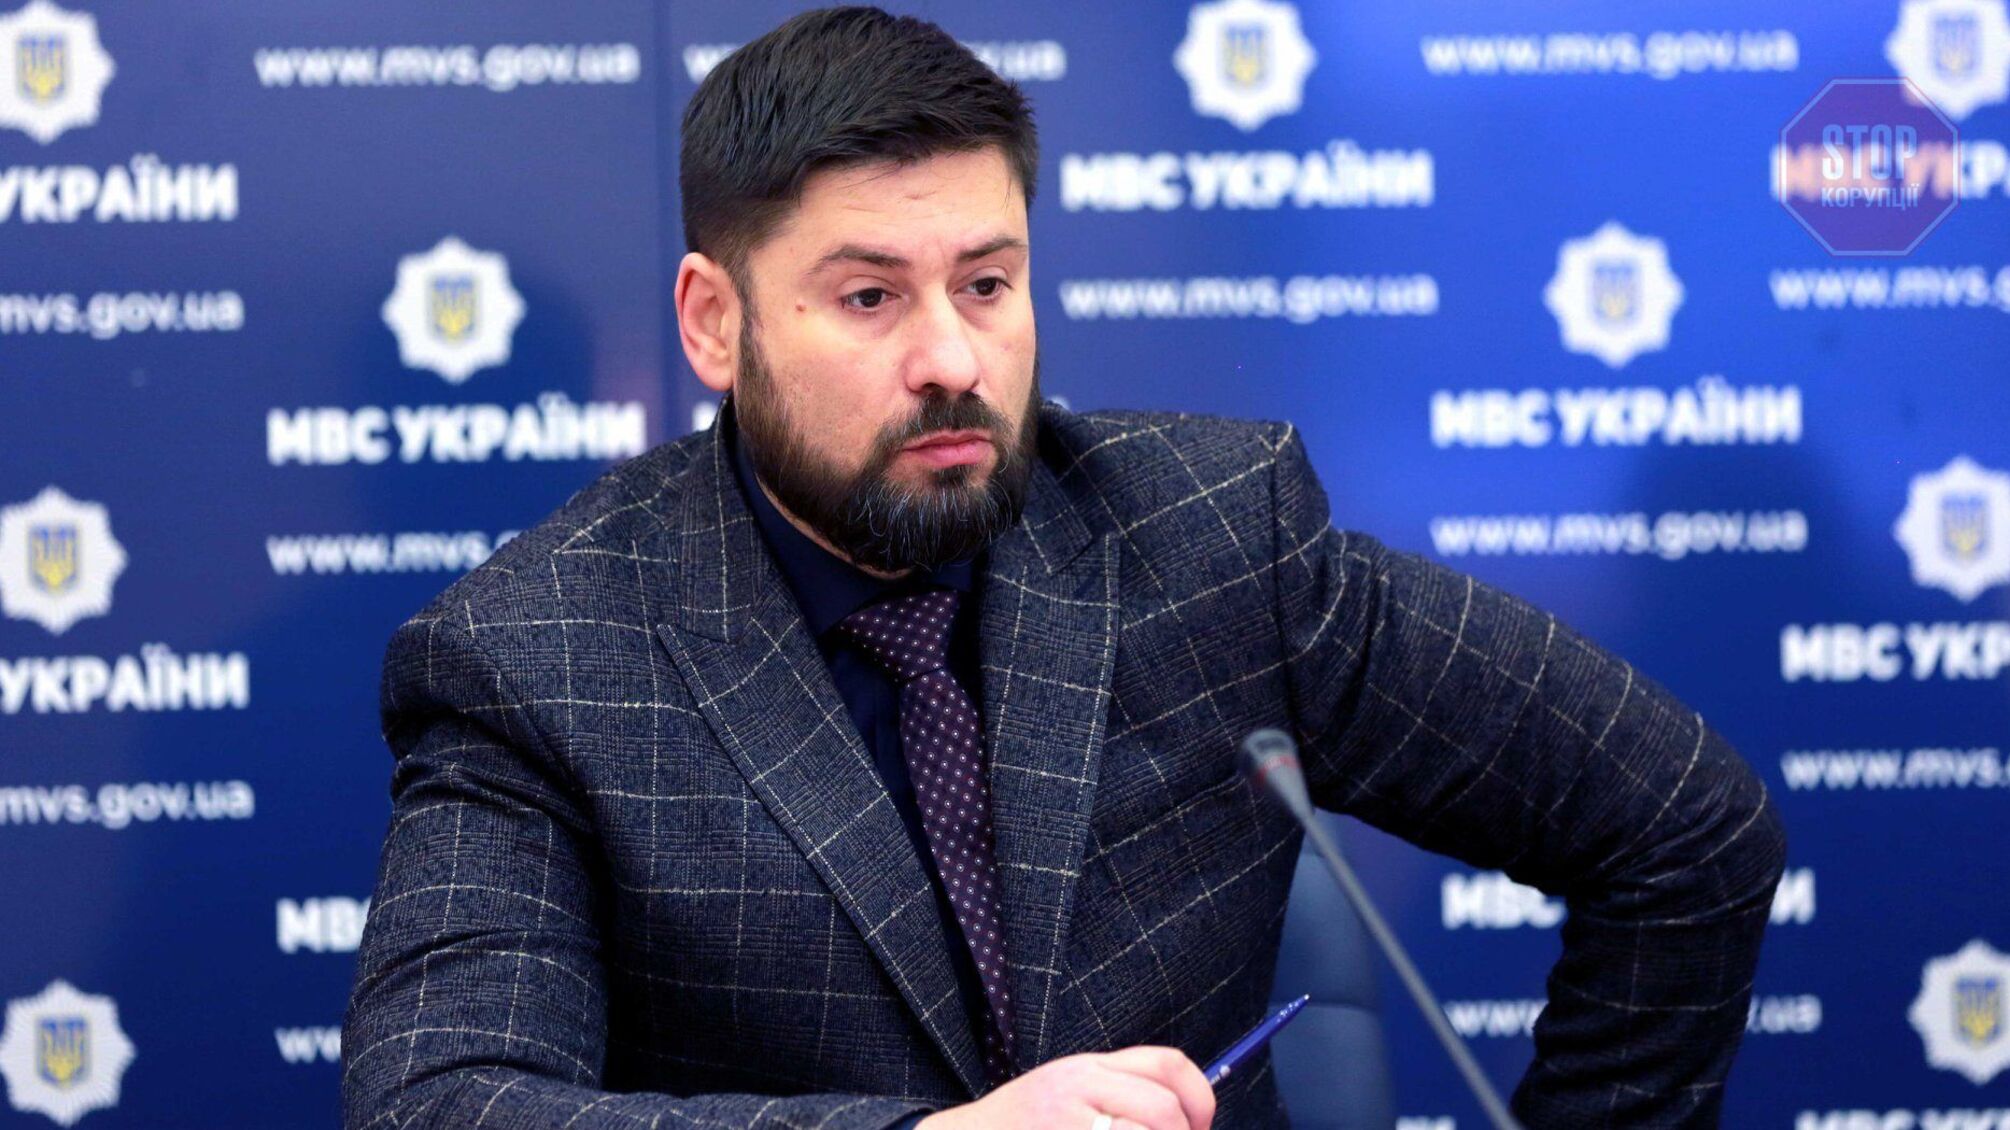 Хамил и угрожал полиции: по дороге в АТО остановили автомобиль заместителя министра МВД Гогилашвили